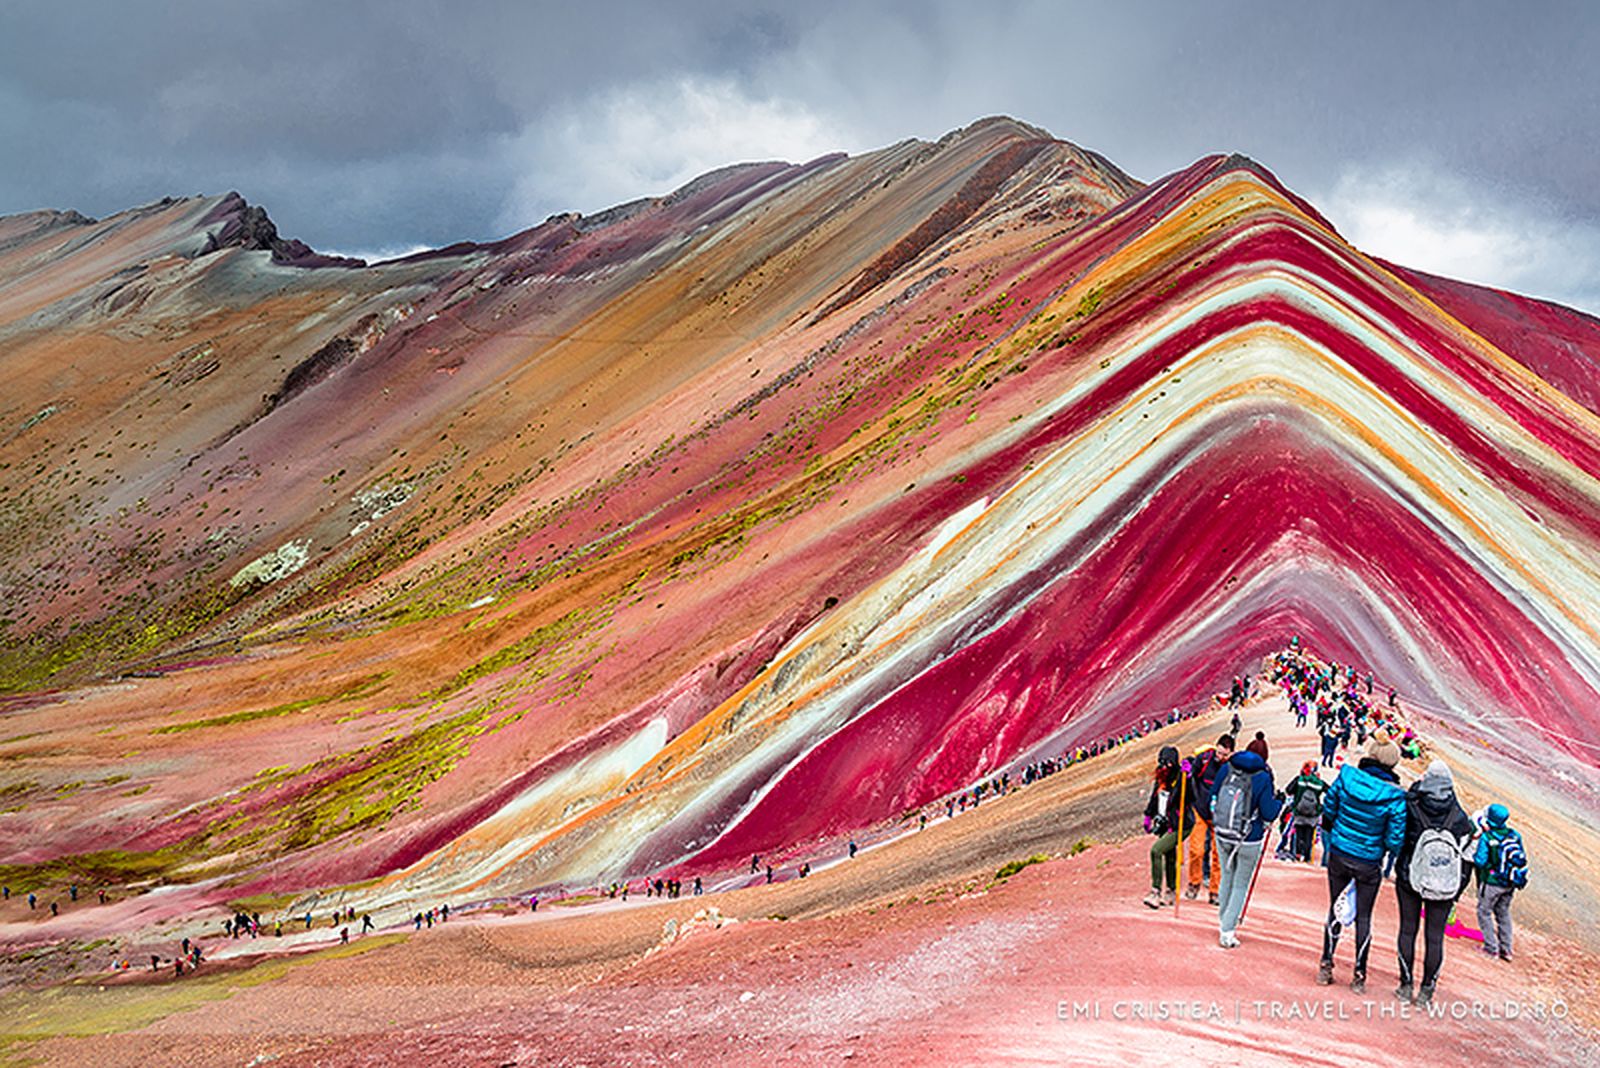 Muntele cu șapte culori din Andesul Peruvian spune povești fantastice